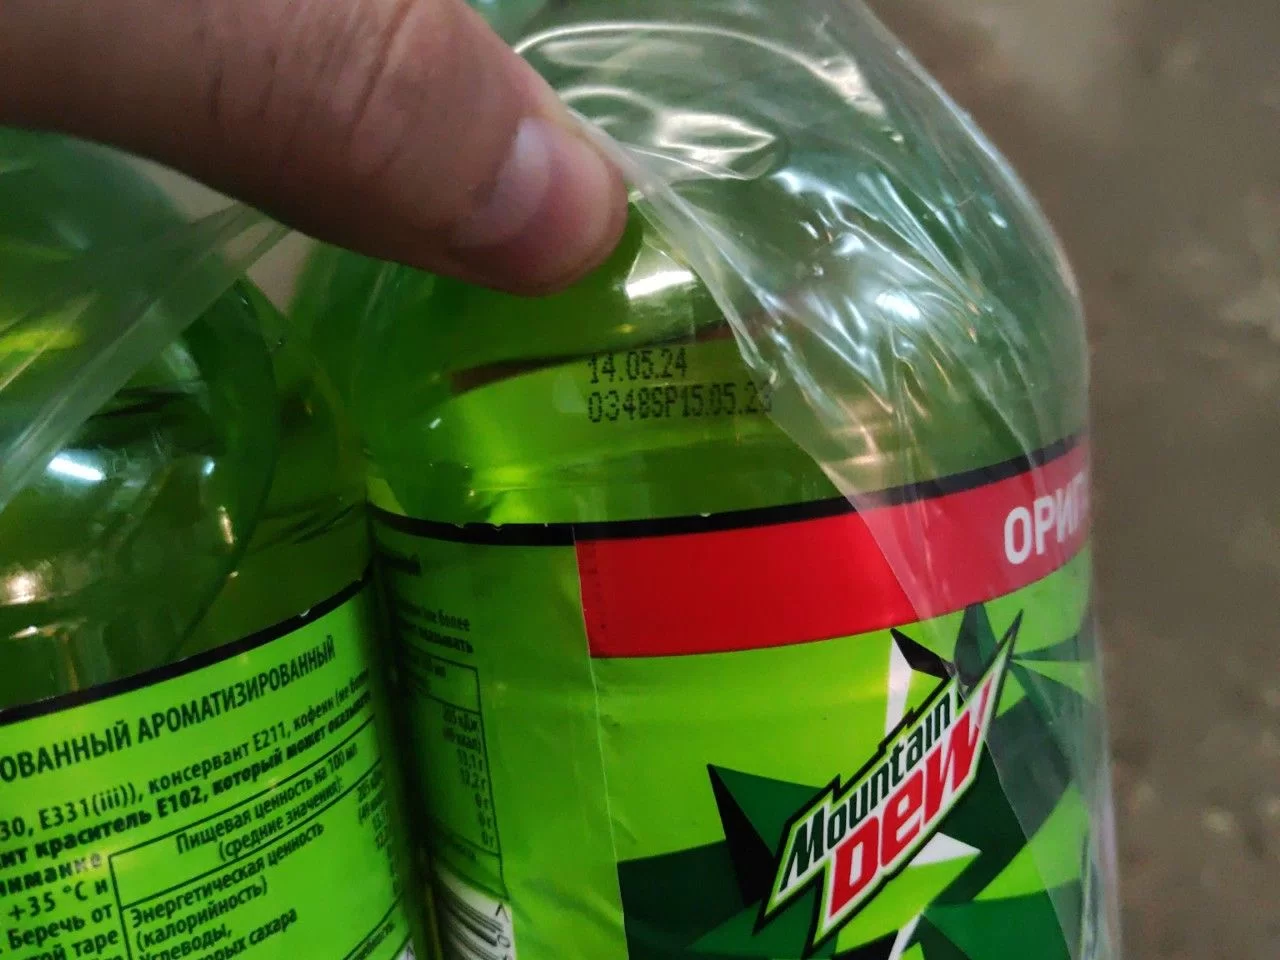 Газированный напиток Mountain Dew 1.5 л. (РФ) - 6 бутылок - фотография № 13